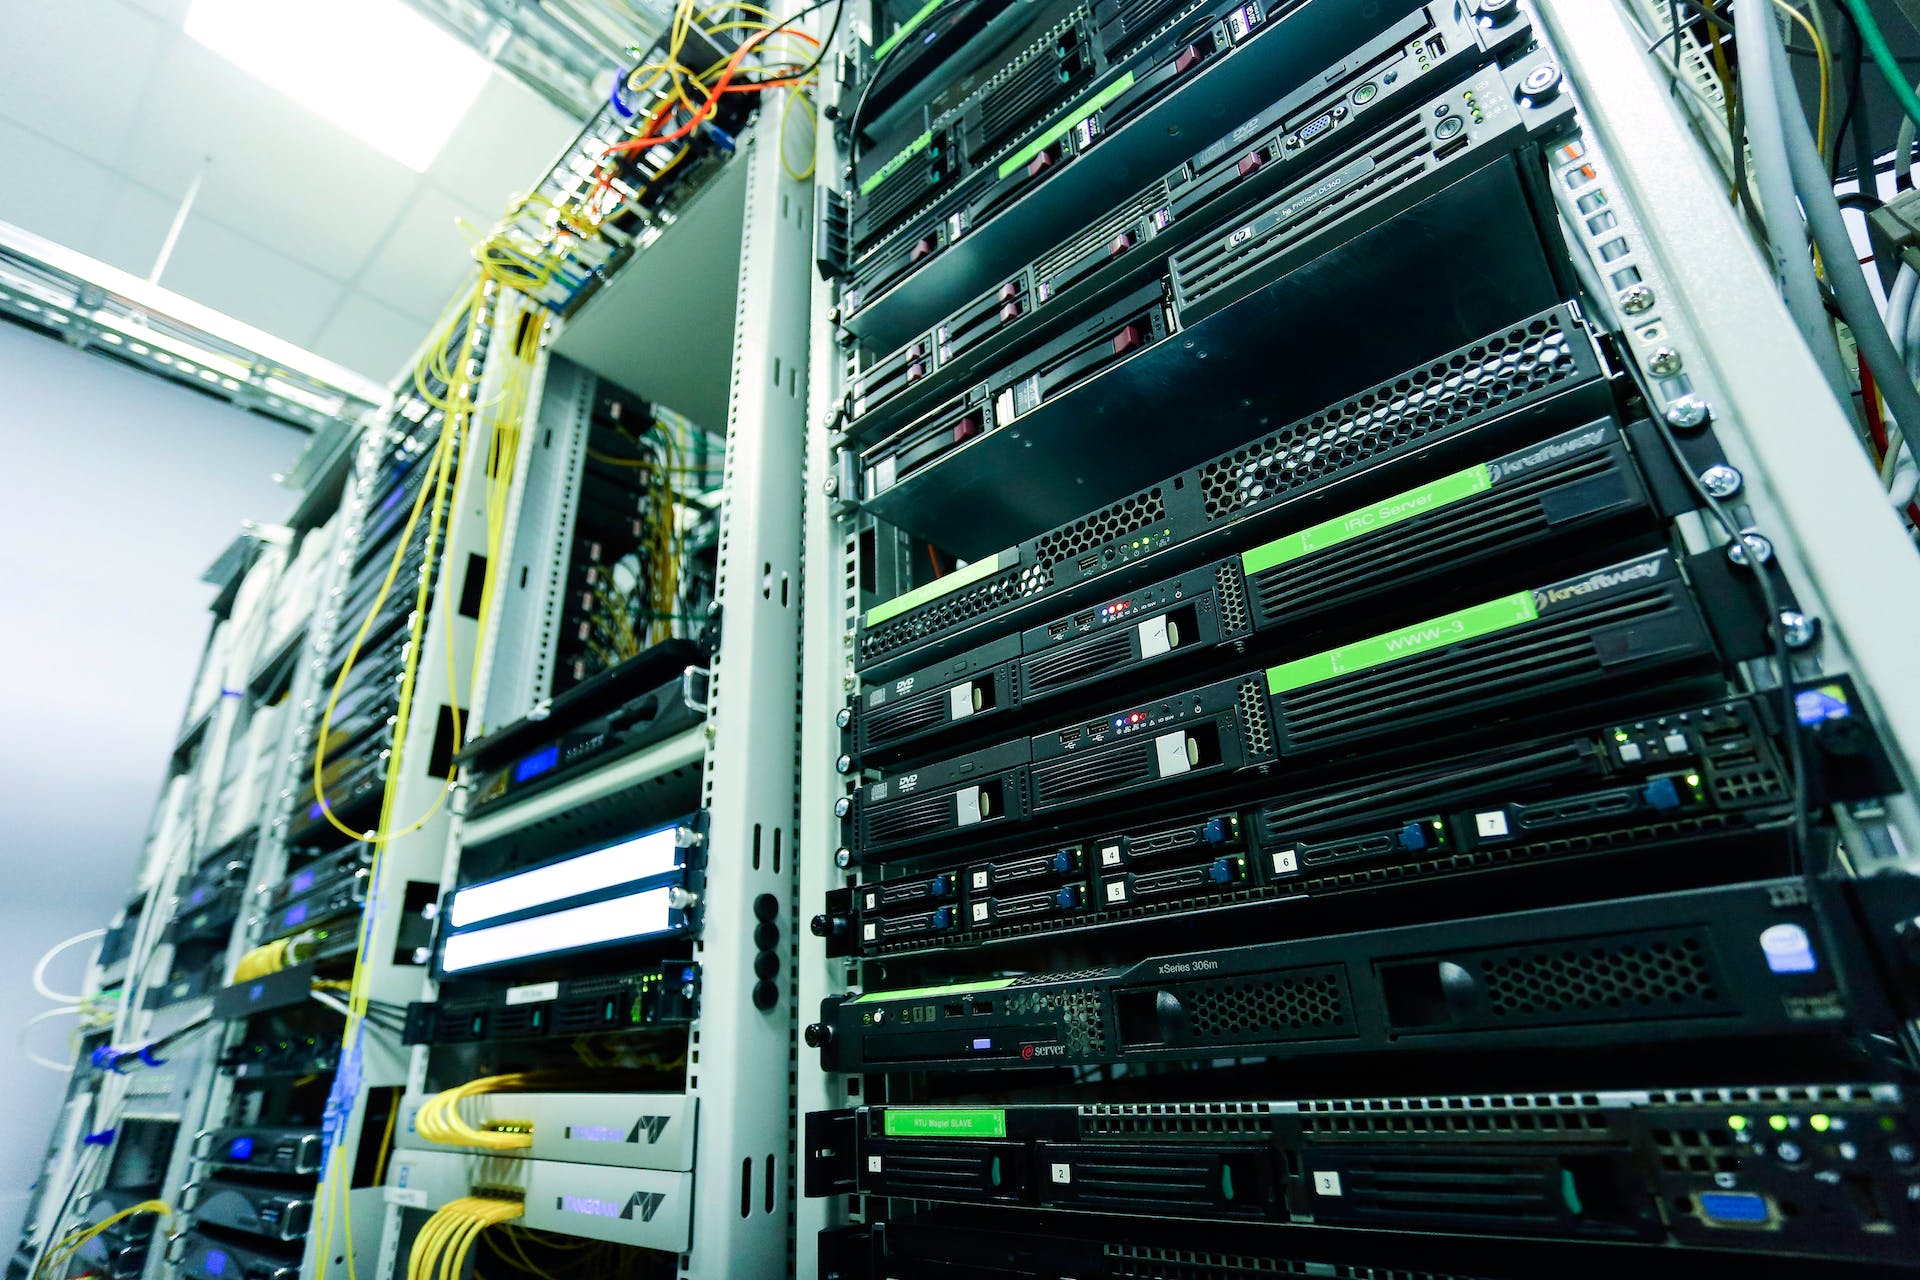 server racks in a data center | Data Center Energy Usage